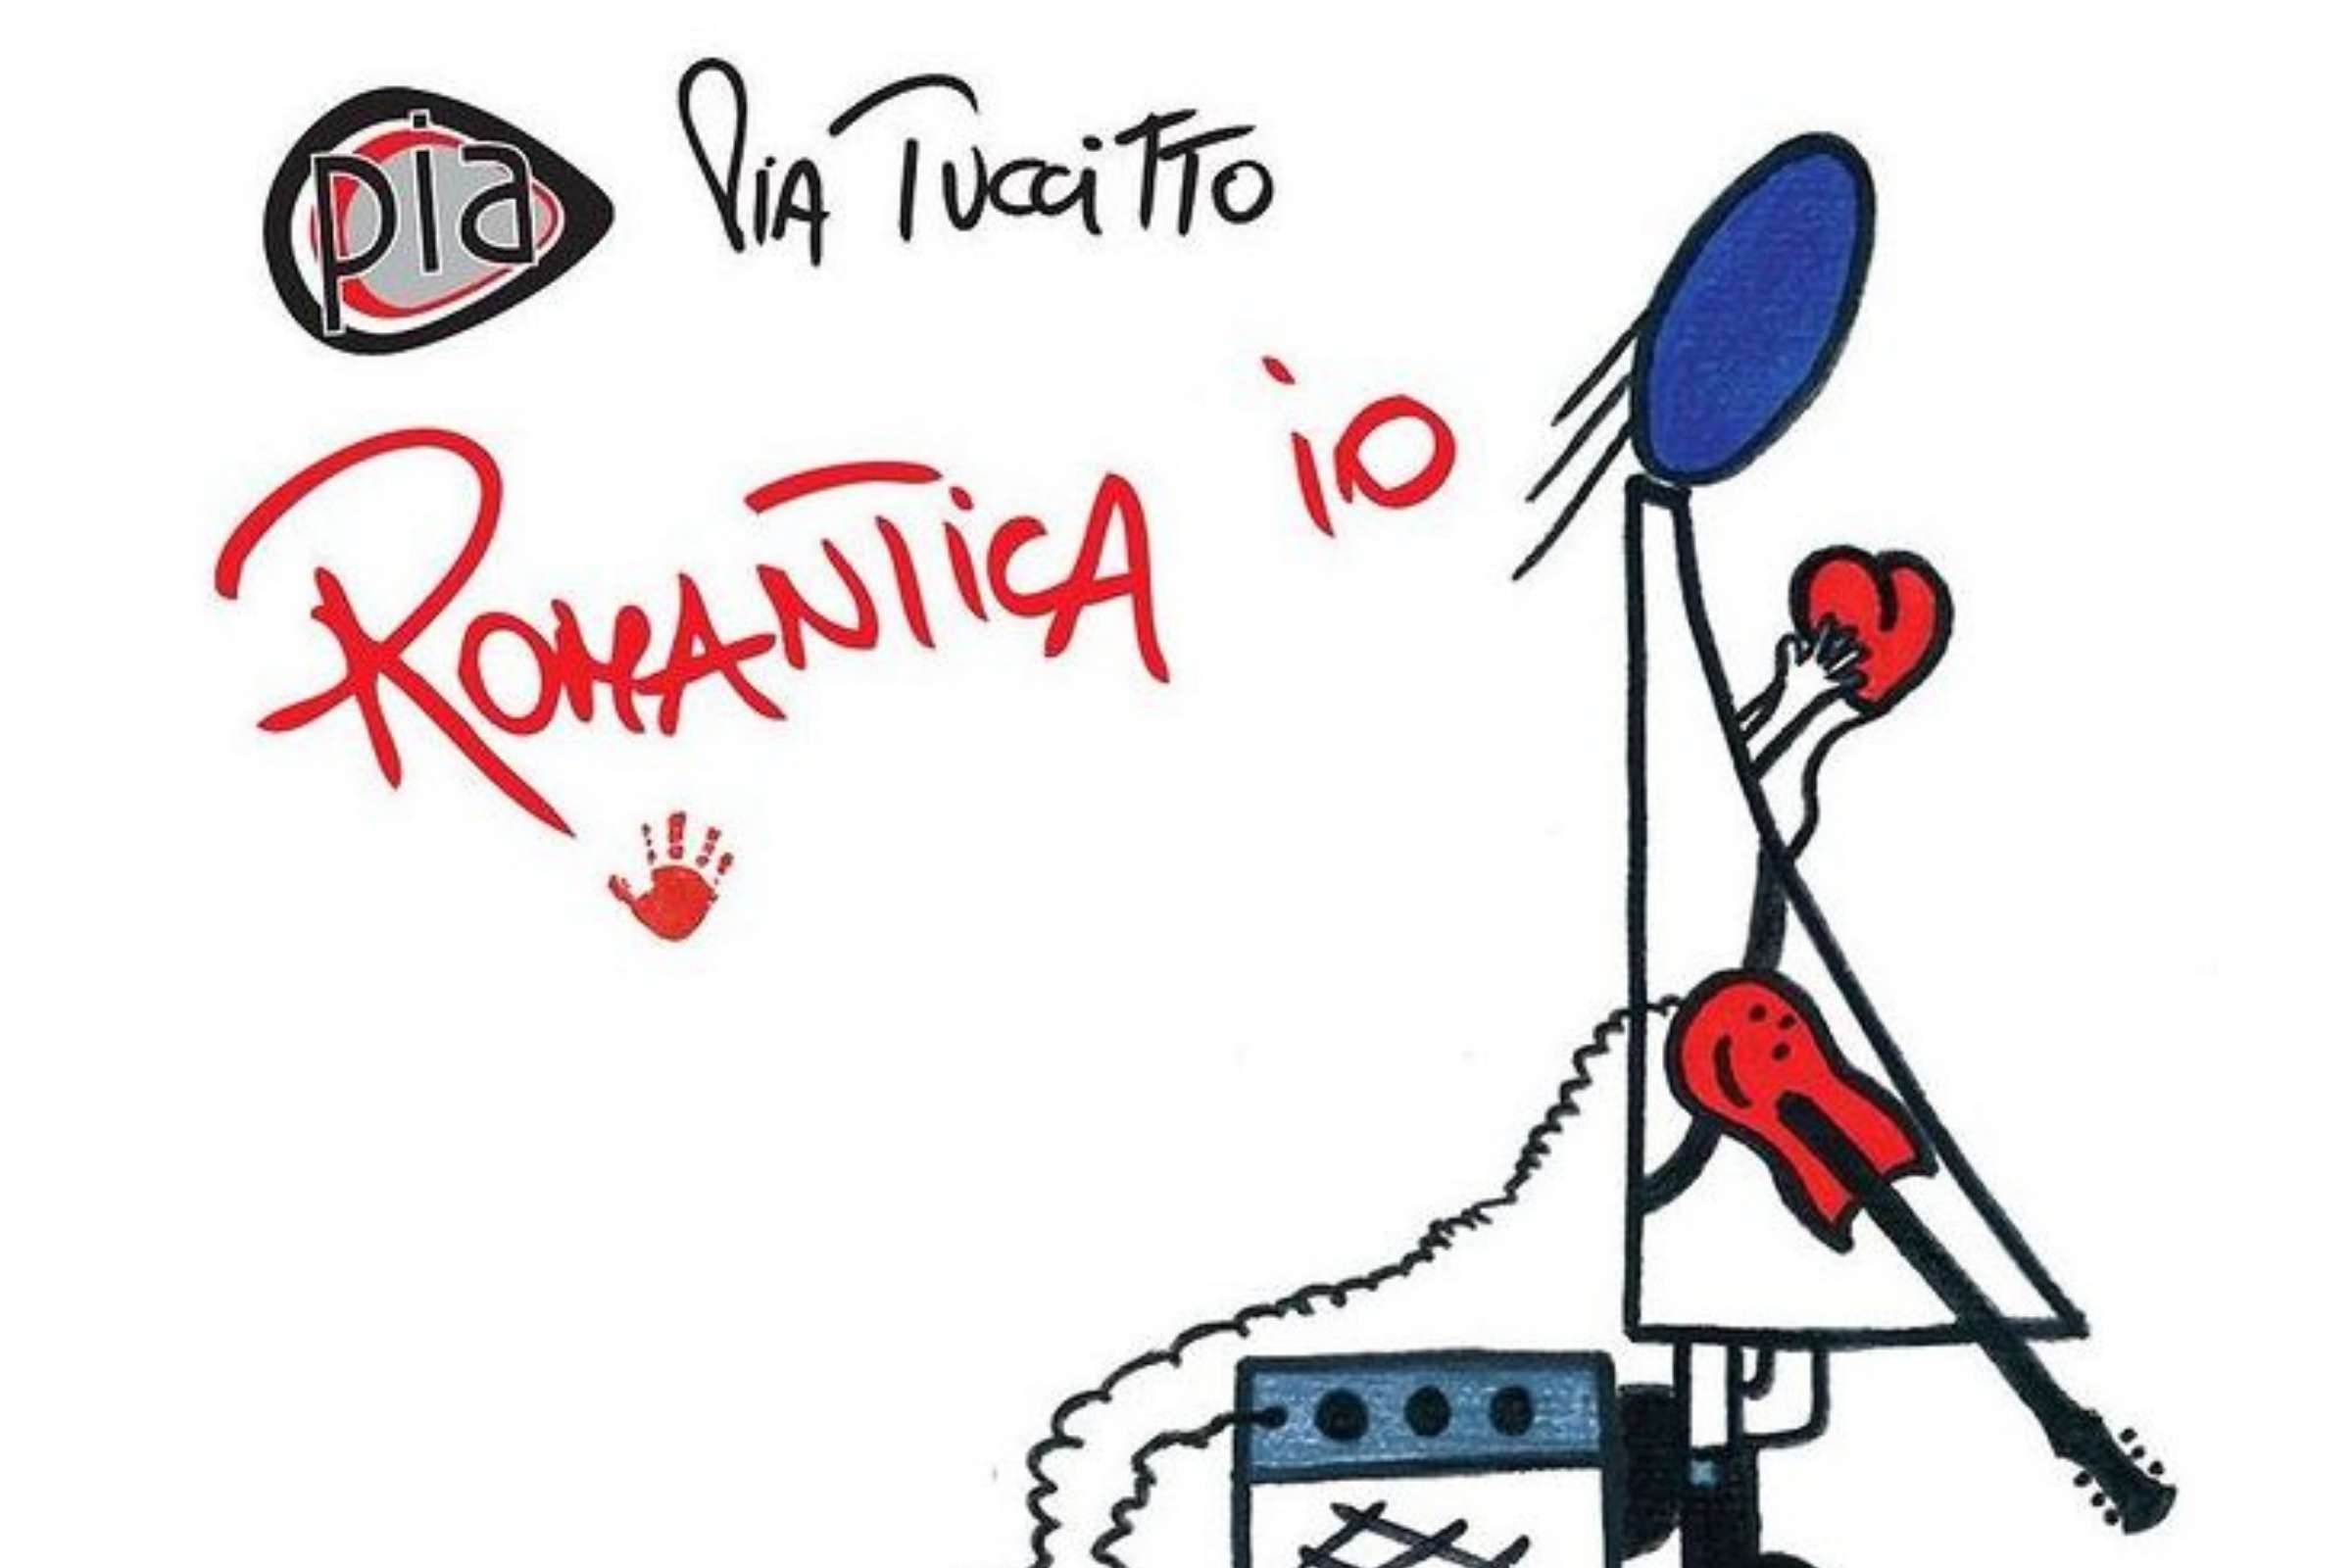 "Romantica Io": Pia Tuccitto lanica l'ultimo singolo dal suo ultimo album. Il brano scritto con Corrado Castellari